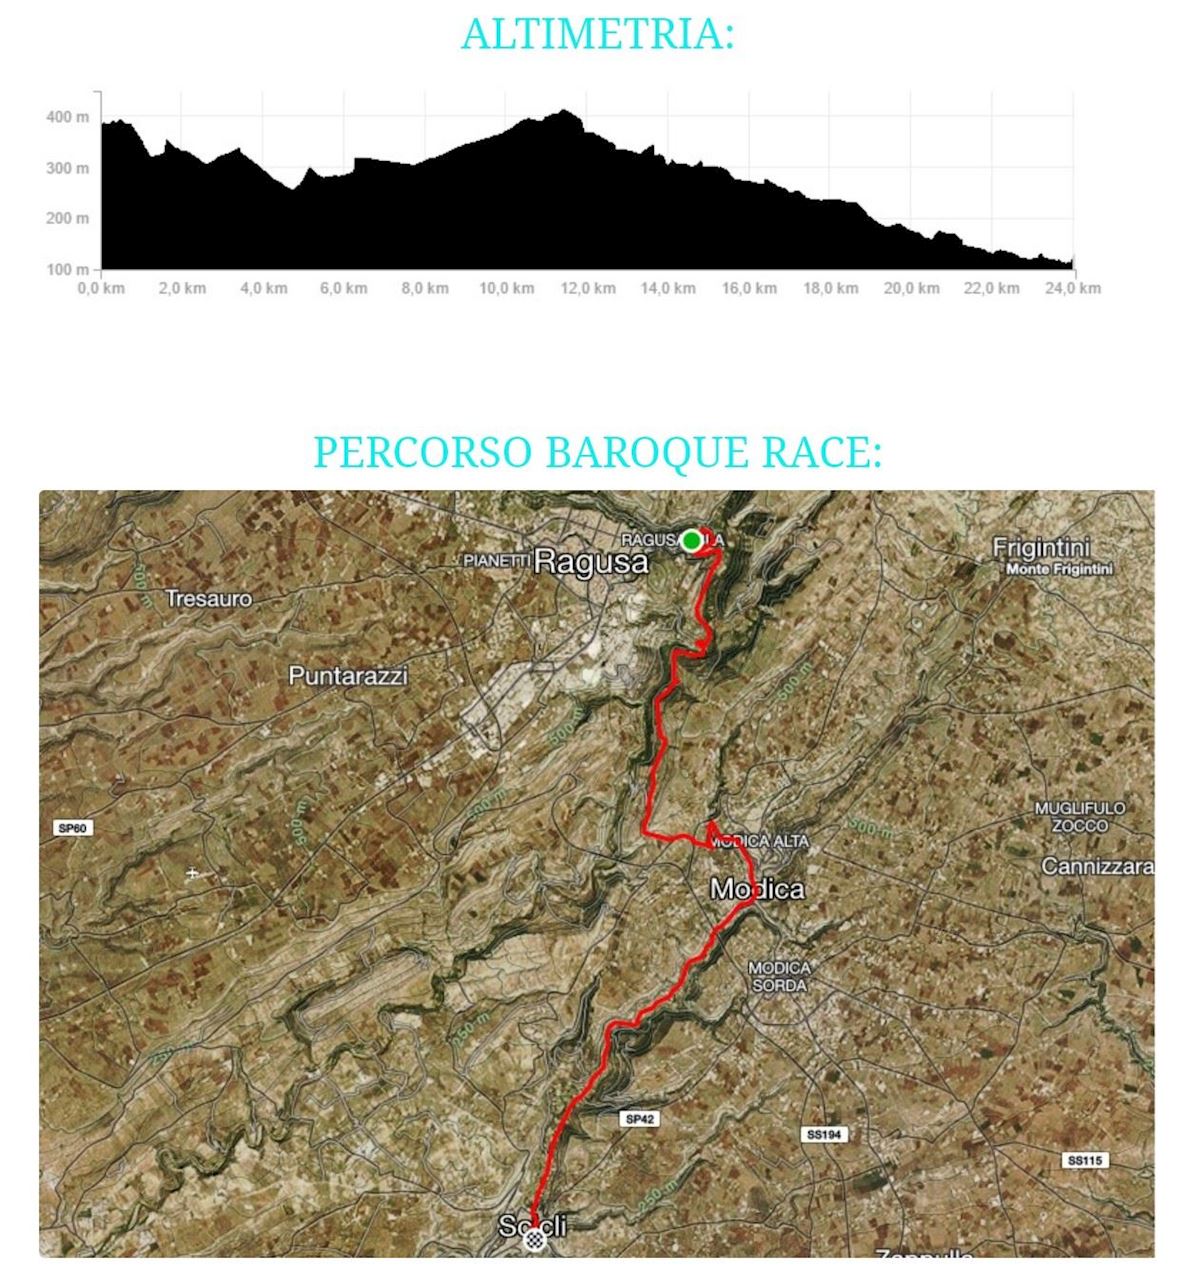 Baroque corsa Route Map